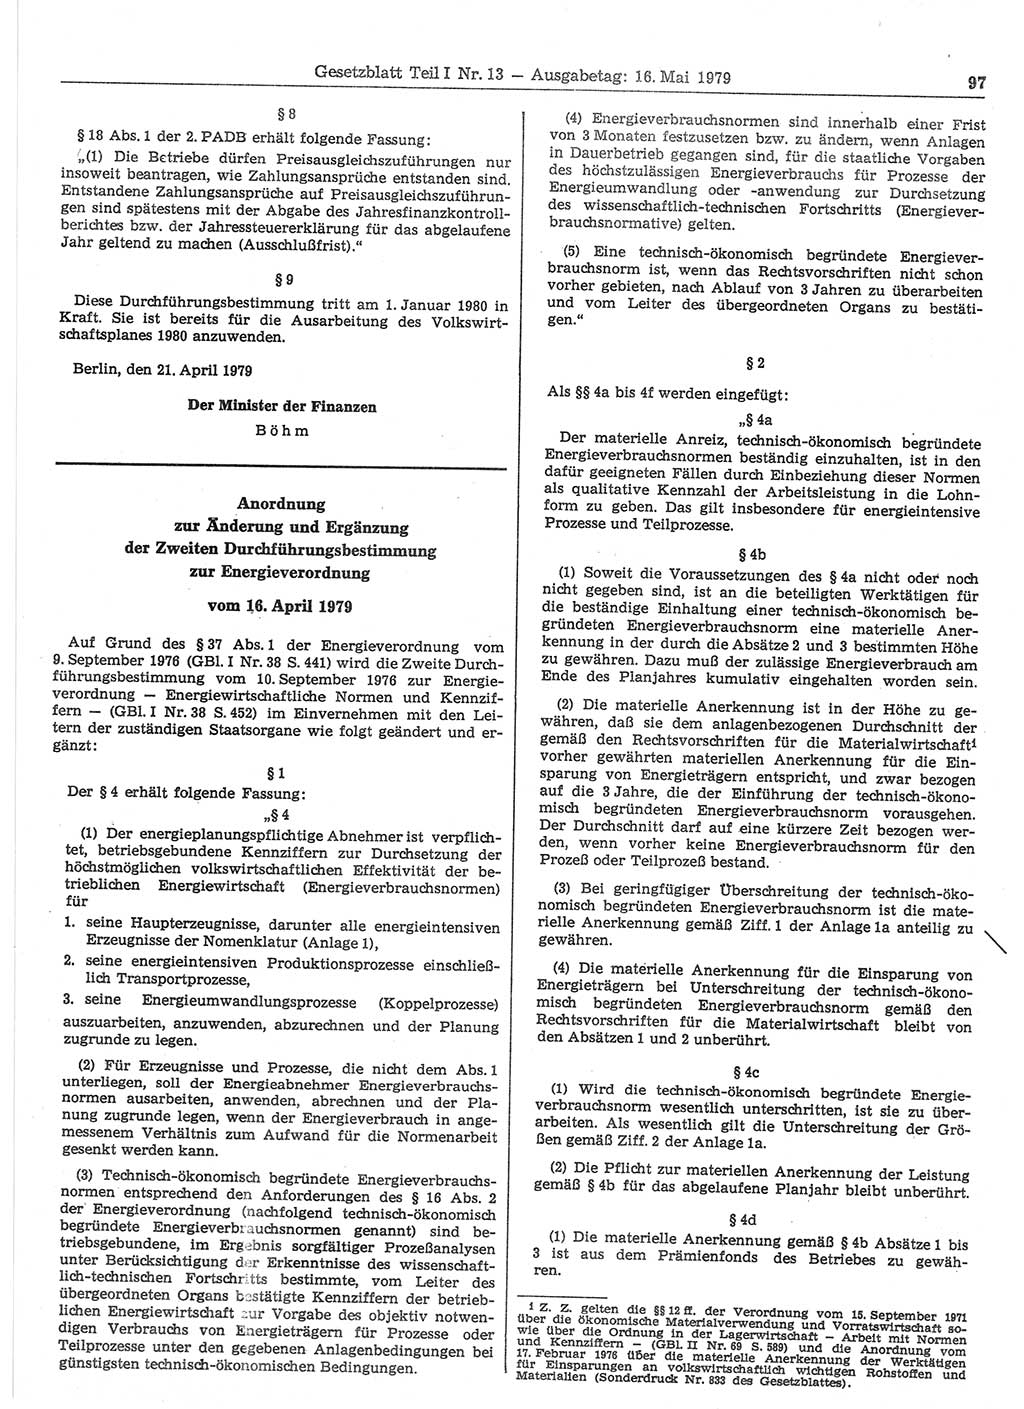 Gesetzblatt (GBl.) der Deutschen Demokratischen Republik (DDR) Teil Ⅰ 1979, Seite 97 (GBl. DDR Ⅰ 1979, S. 97)